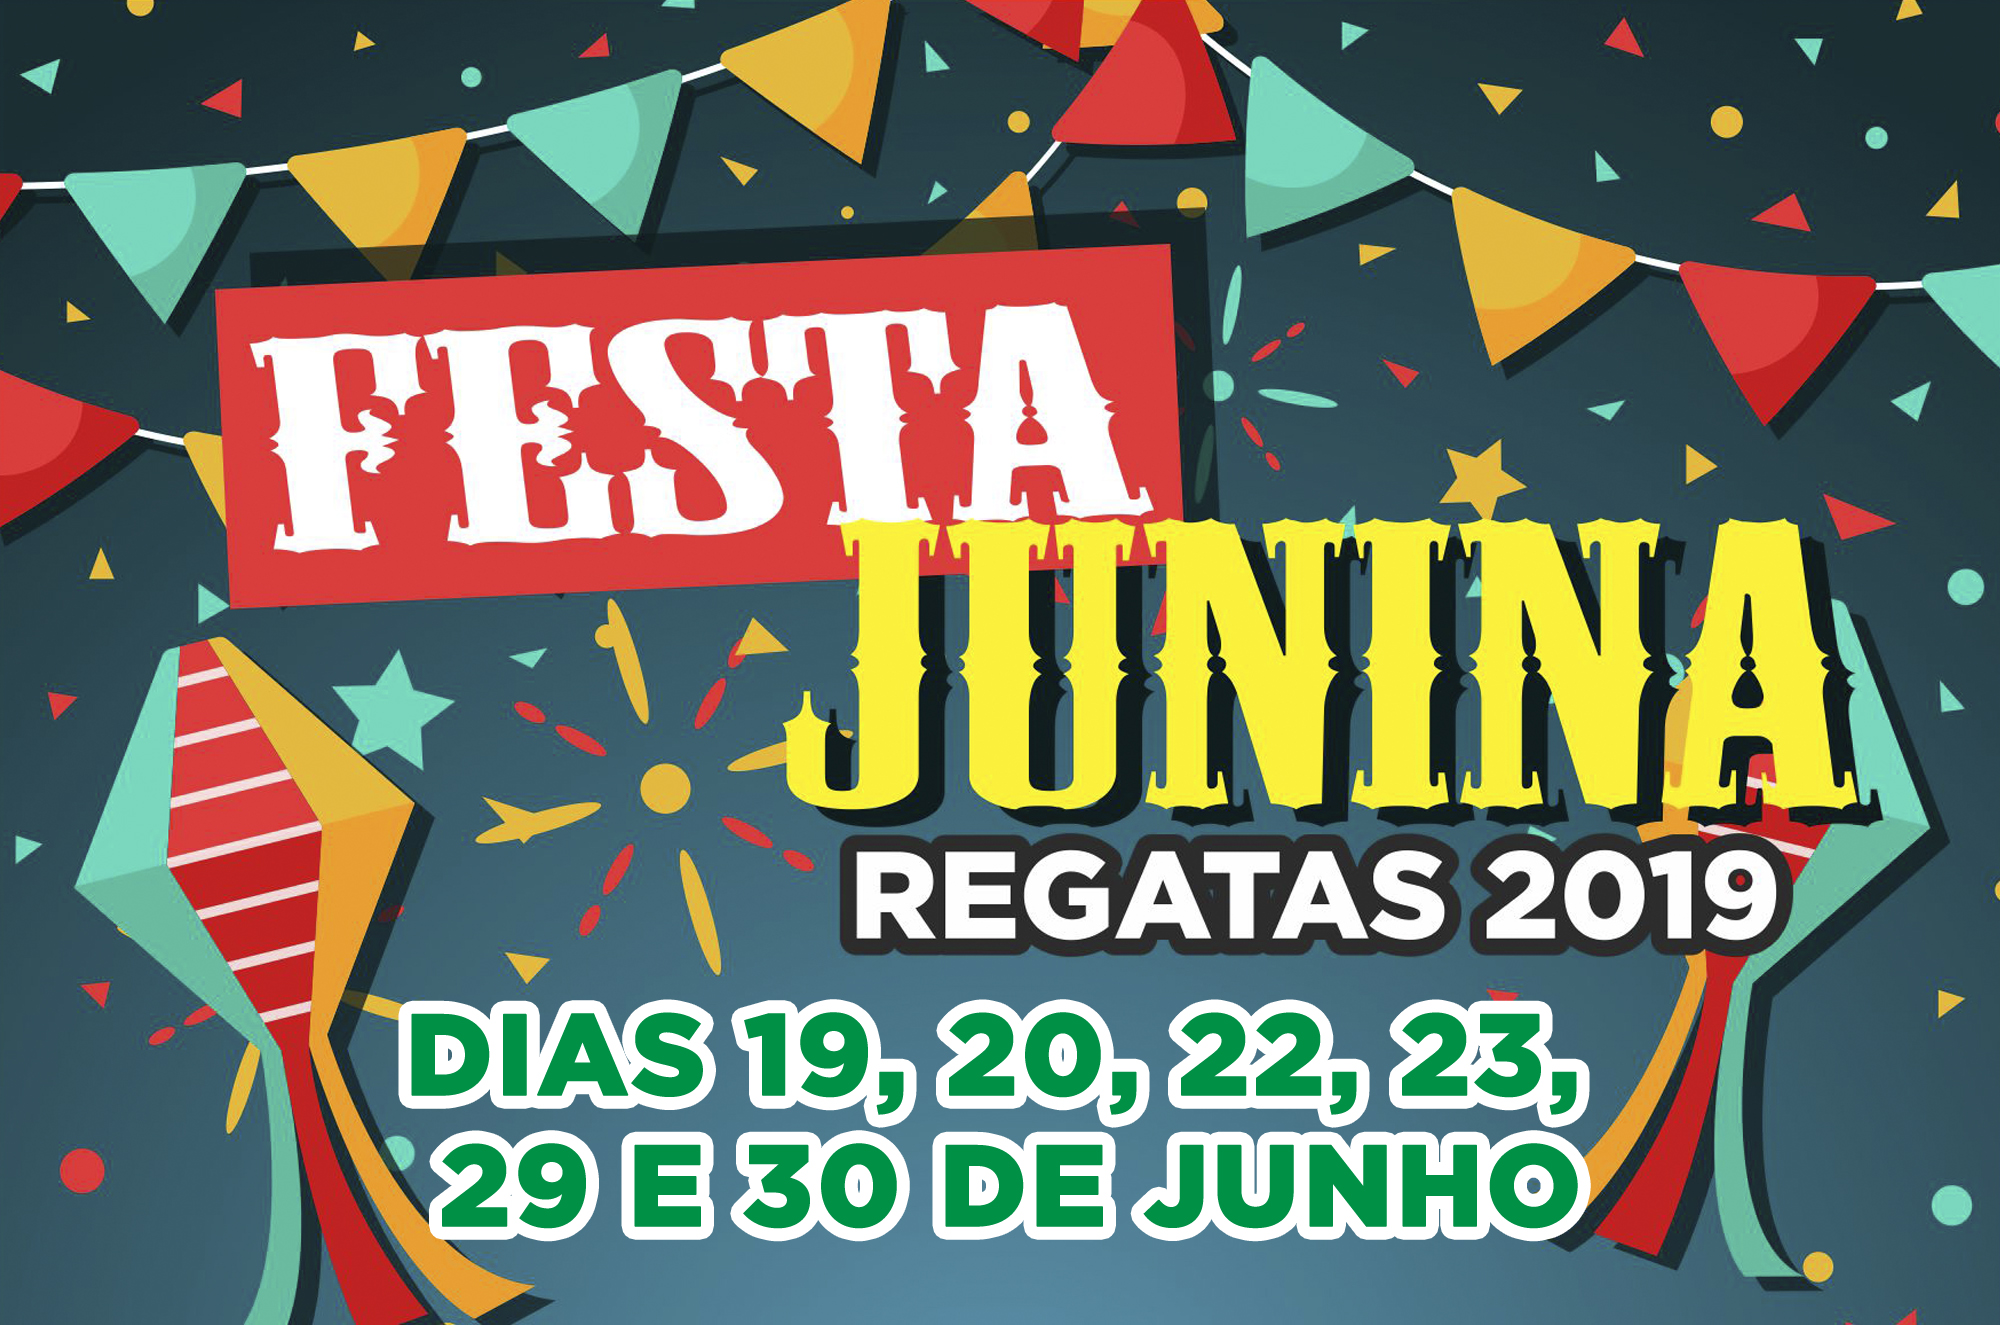 Festa Junina Regatas 2019